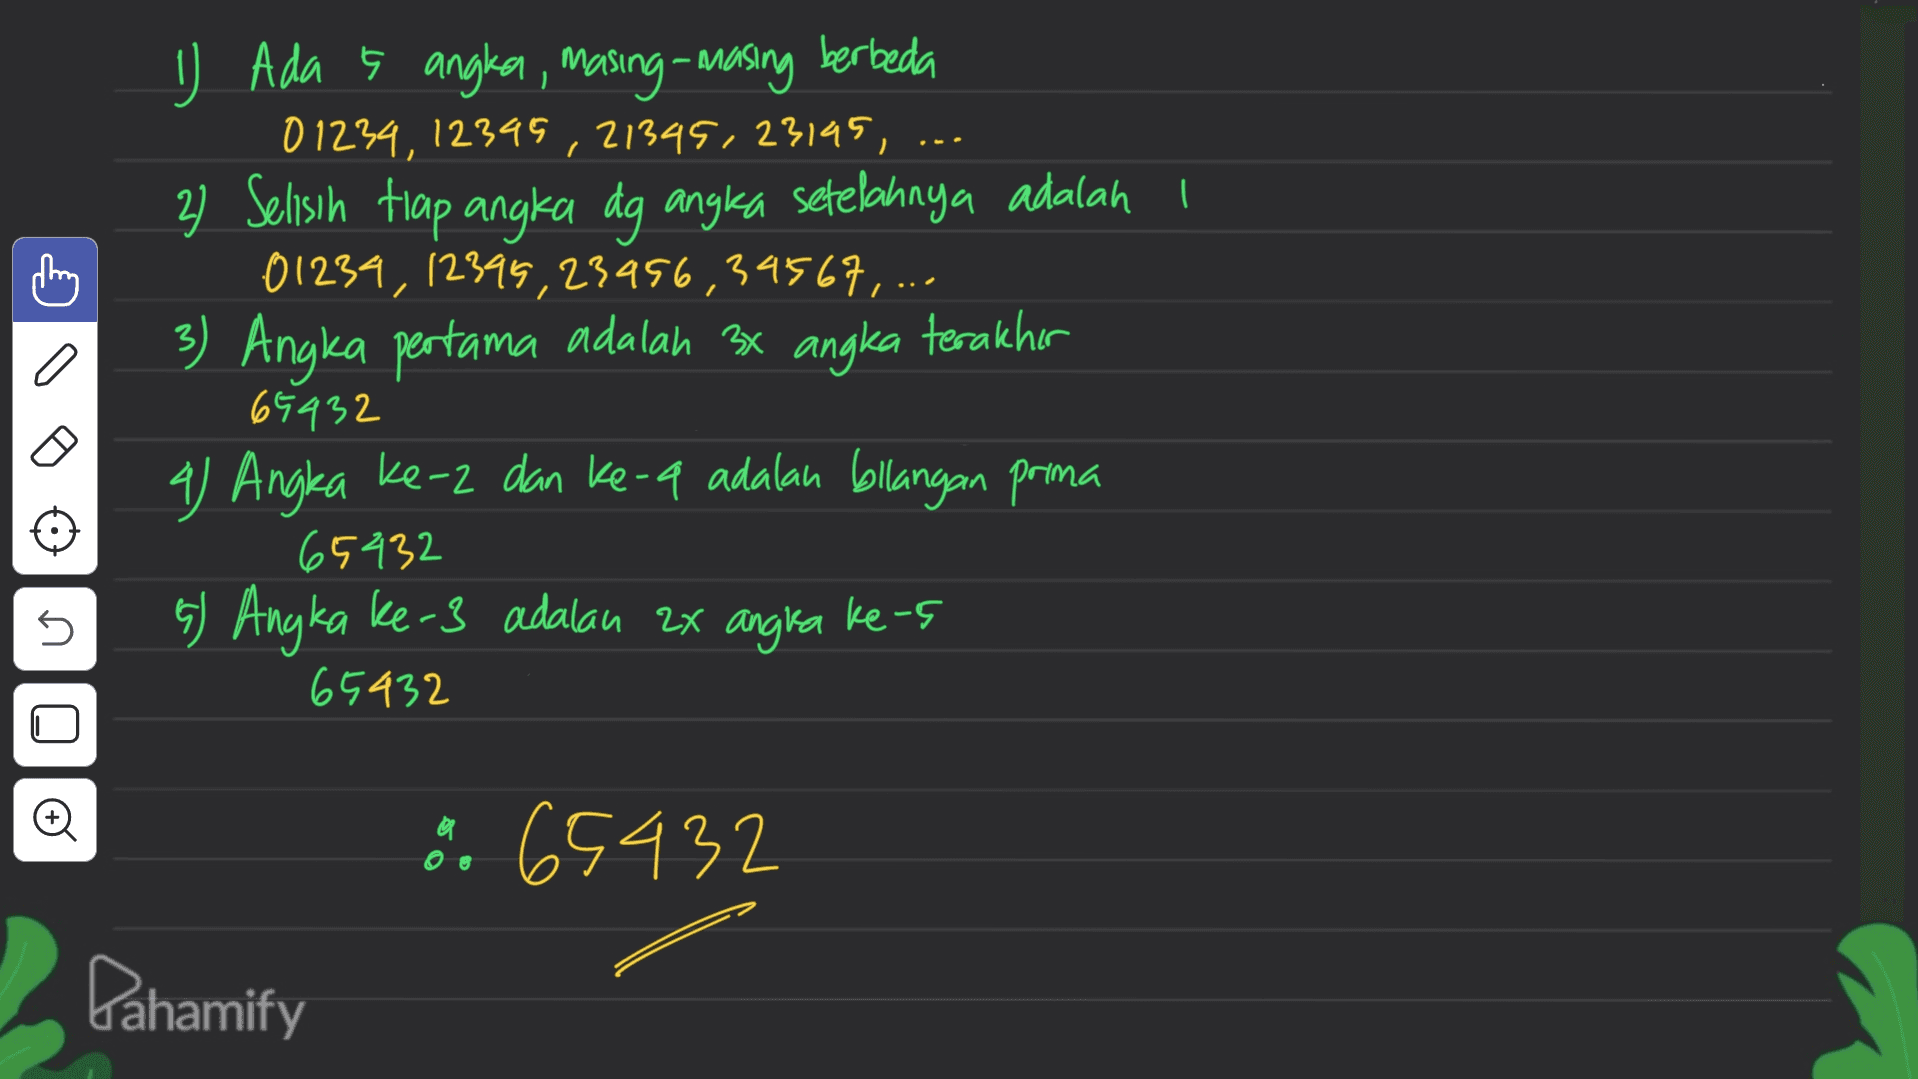 3 C a J Ada s angla, masing-masing berbeda 01234, 12395,21345.23145, ... 2 Selisih trap angka dg angka setelahnya adalah i 01234, 12399,23456,39567,... Angka pertama adalah 3x angka terakhir 65432 4) Angka ke-2 dan ke-a adalah bilangan prima 65432 s) Angka ke-3 adalan ax angra 65432 5 ke-5 8 65432 Pahamify 